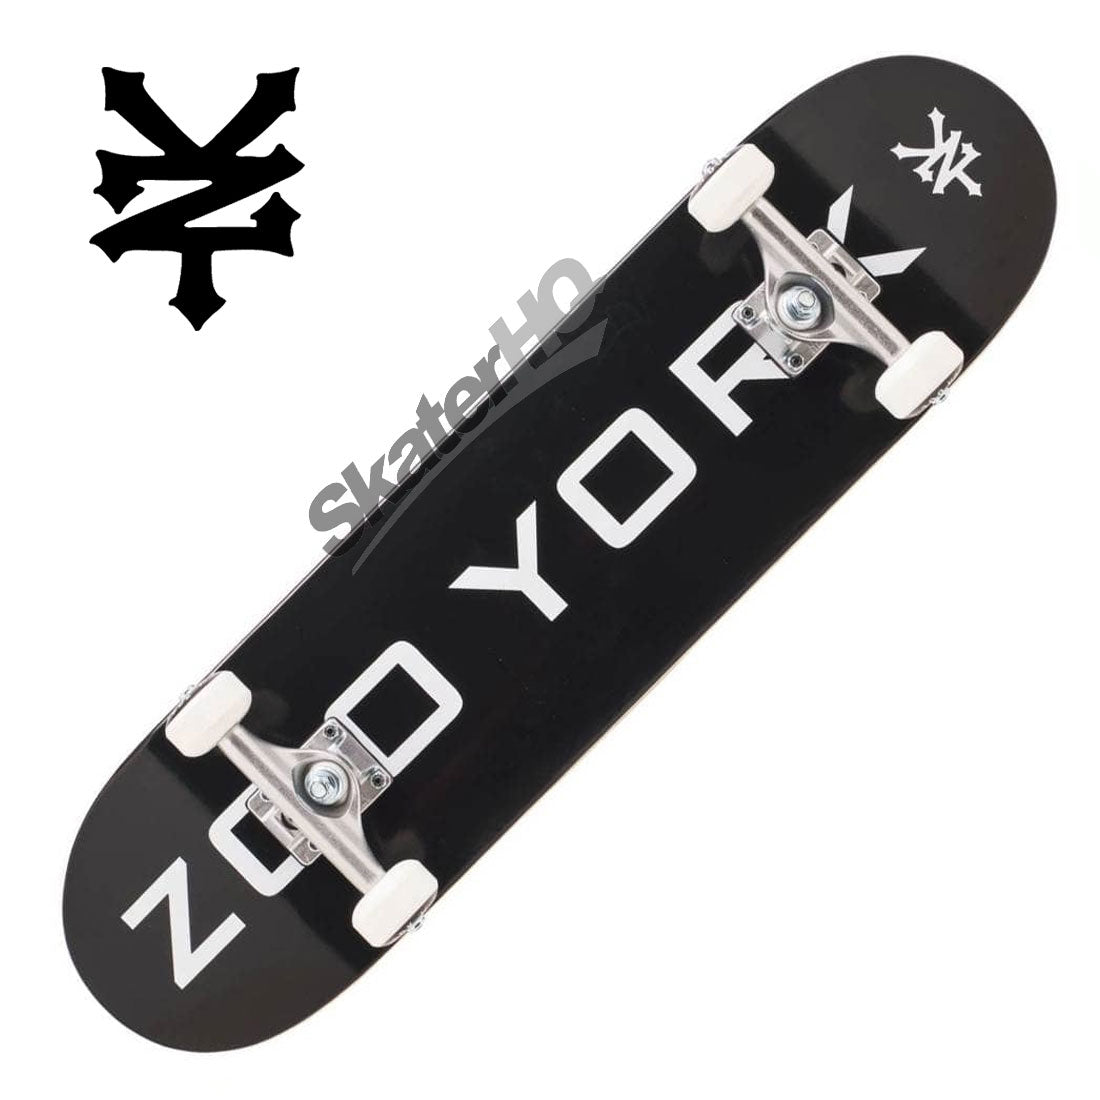 Zoo York OG 95 7.75 Complete - Black Skateboard Completes Modern Street